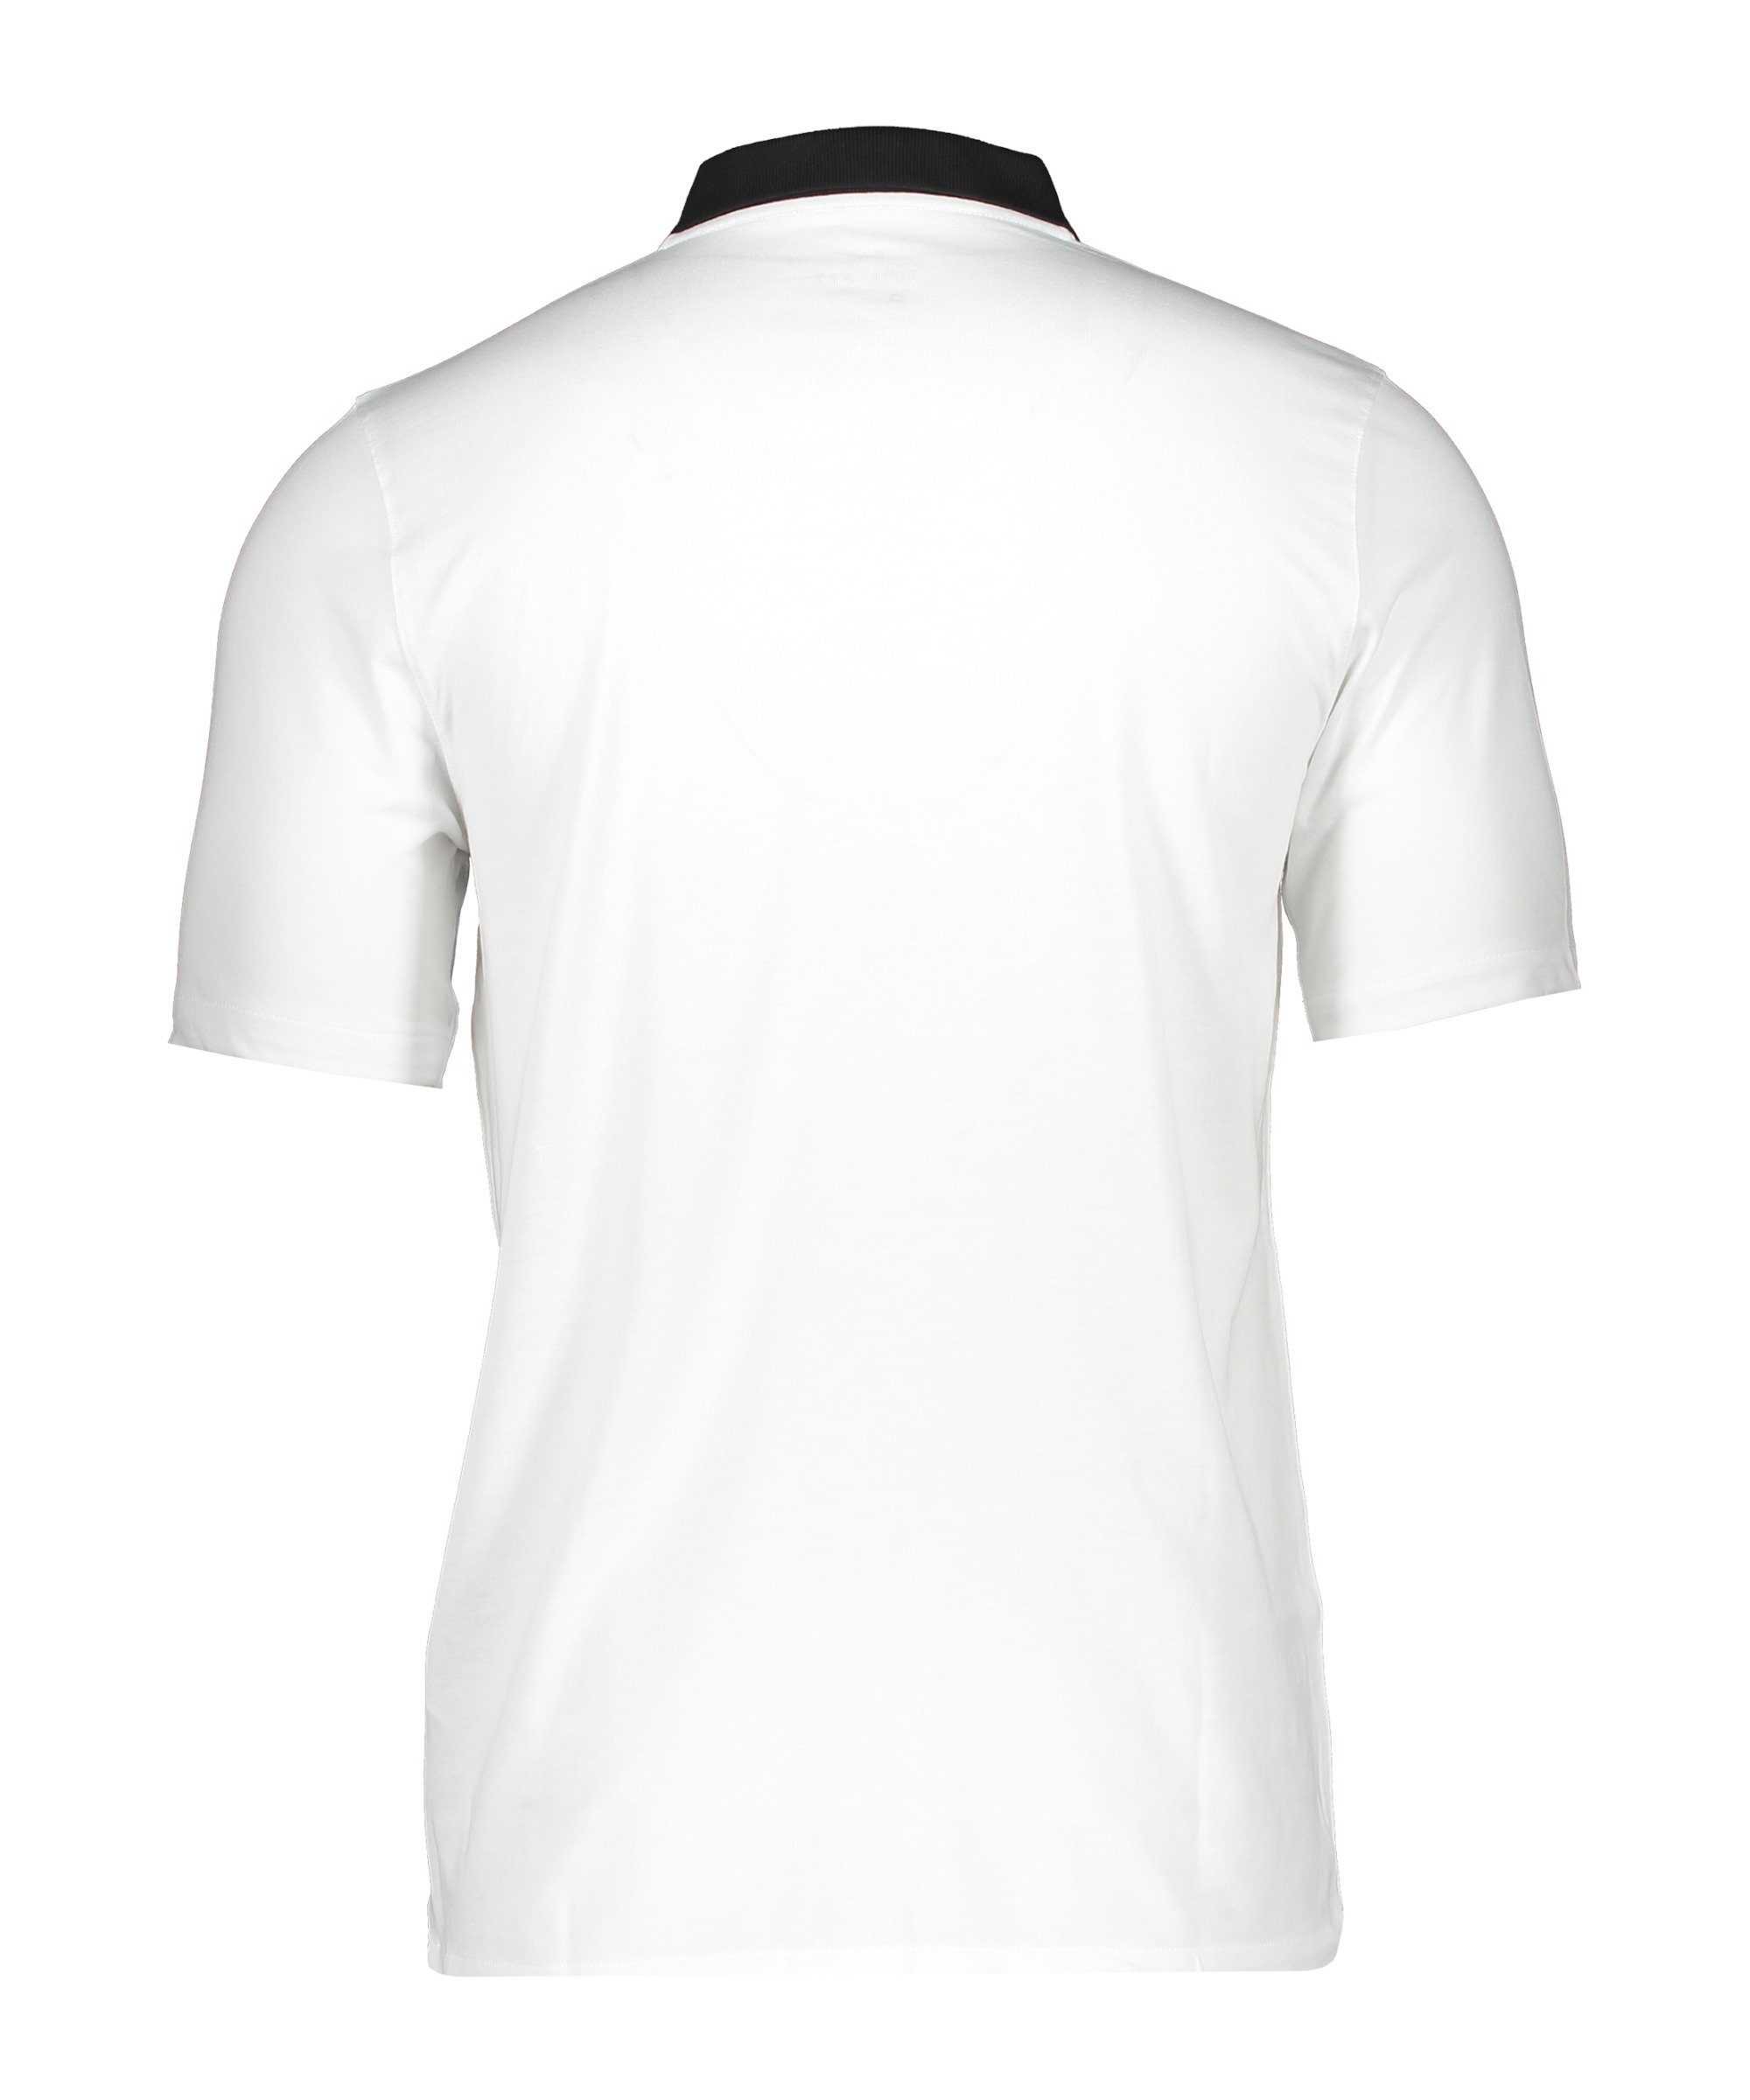 Nike 20 default weissschwarz Poloshirt Park T-Shirt